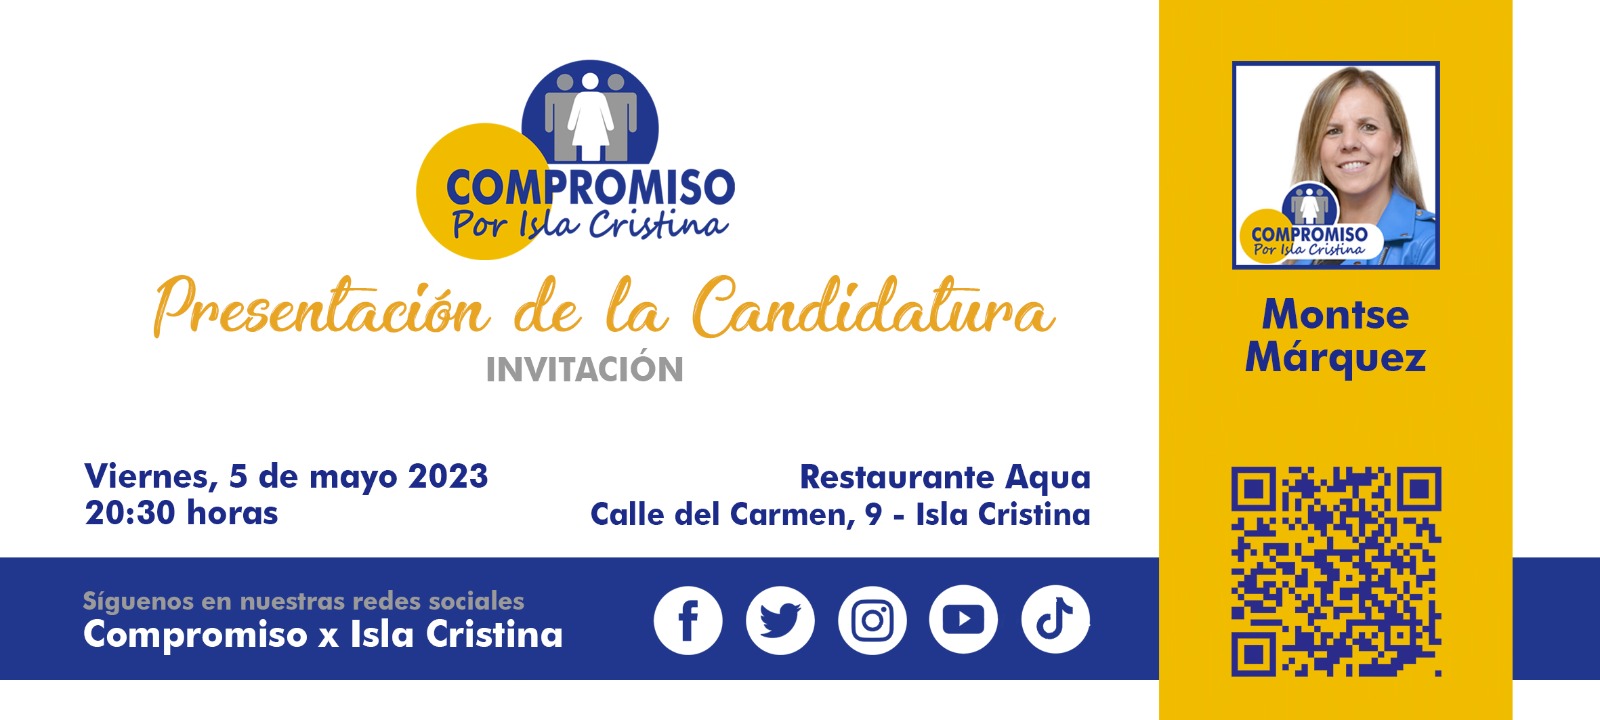 Presentación de la Candidatura “Compromiso Por Isla Cristina”